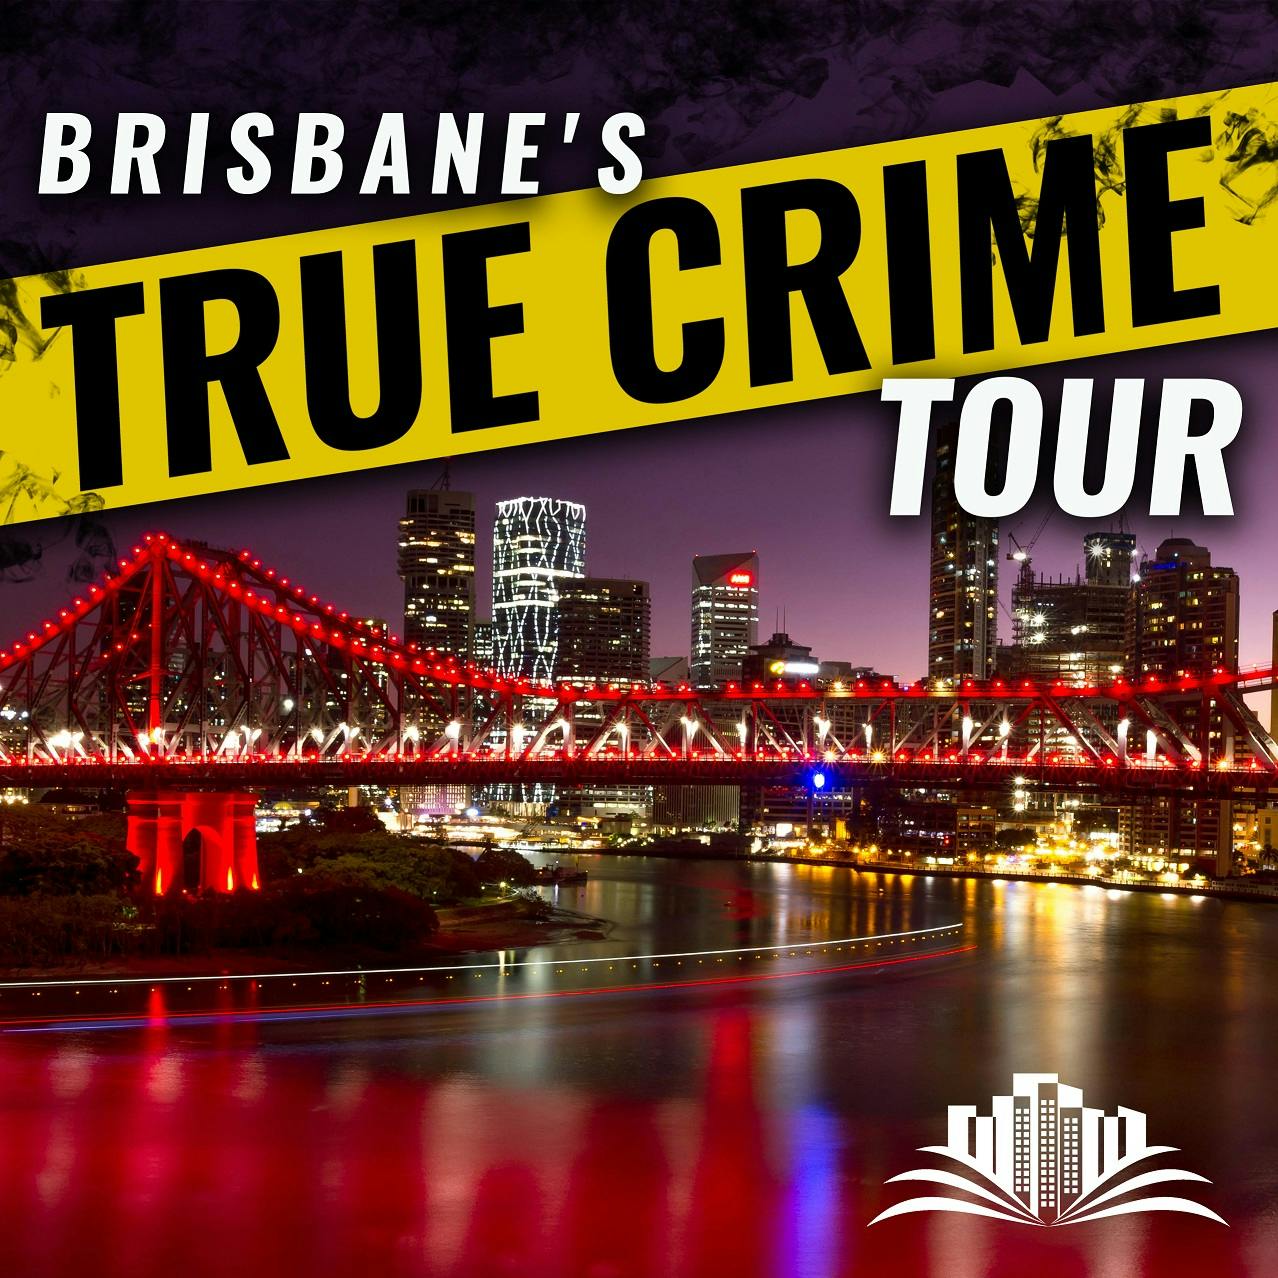 Mroczne historie Brisbane, prawdziwa trasa kryminalna